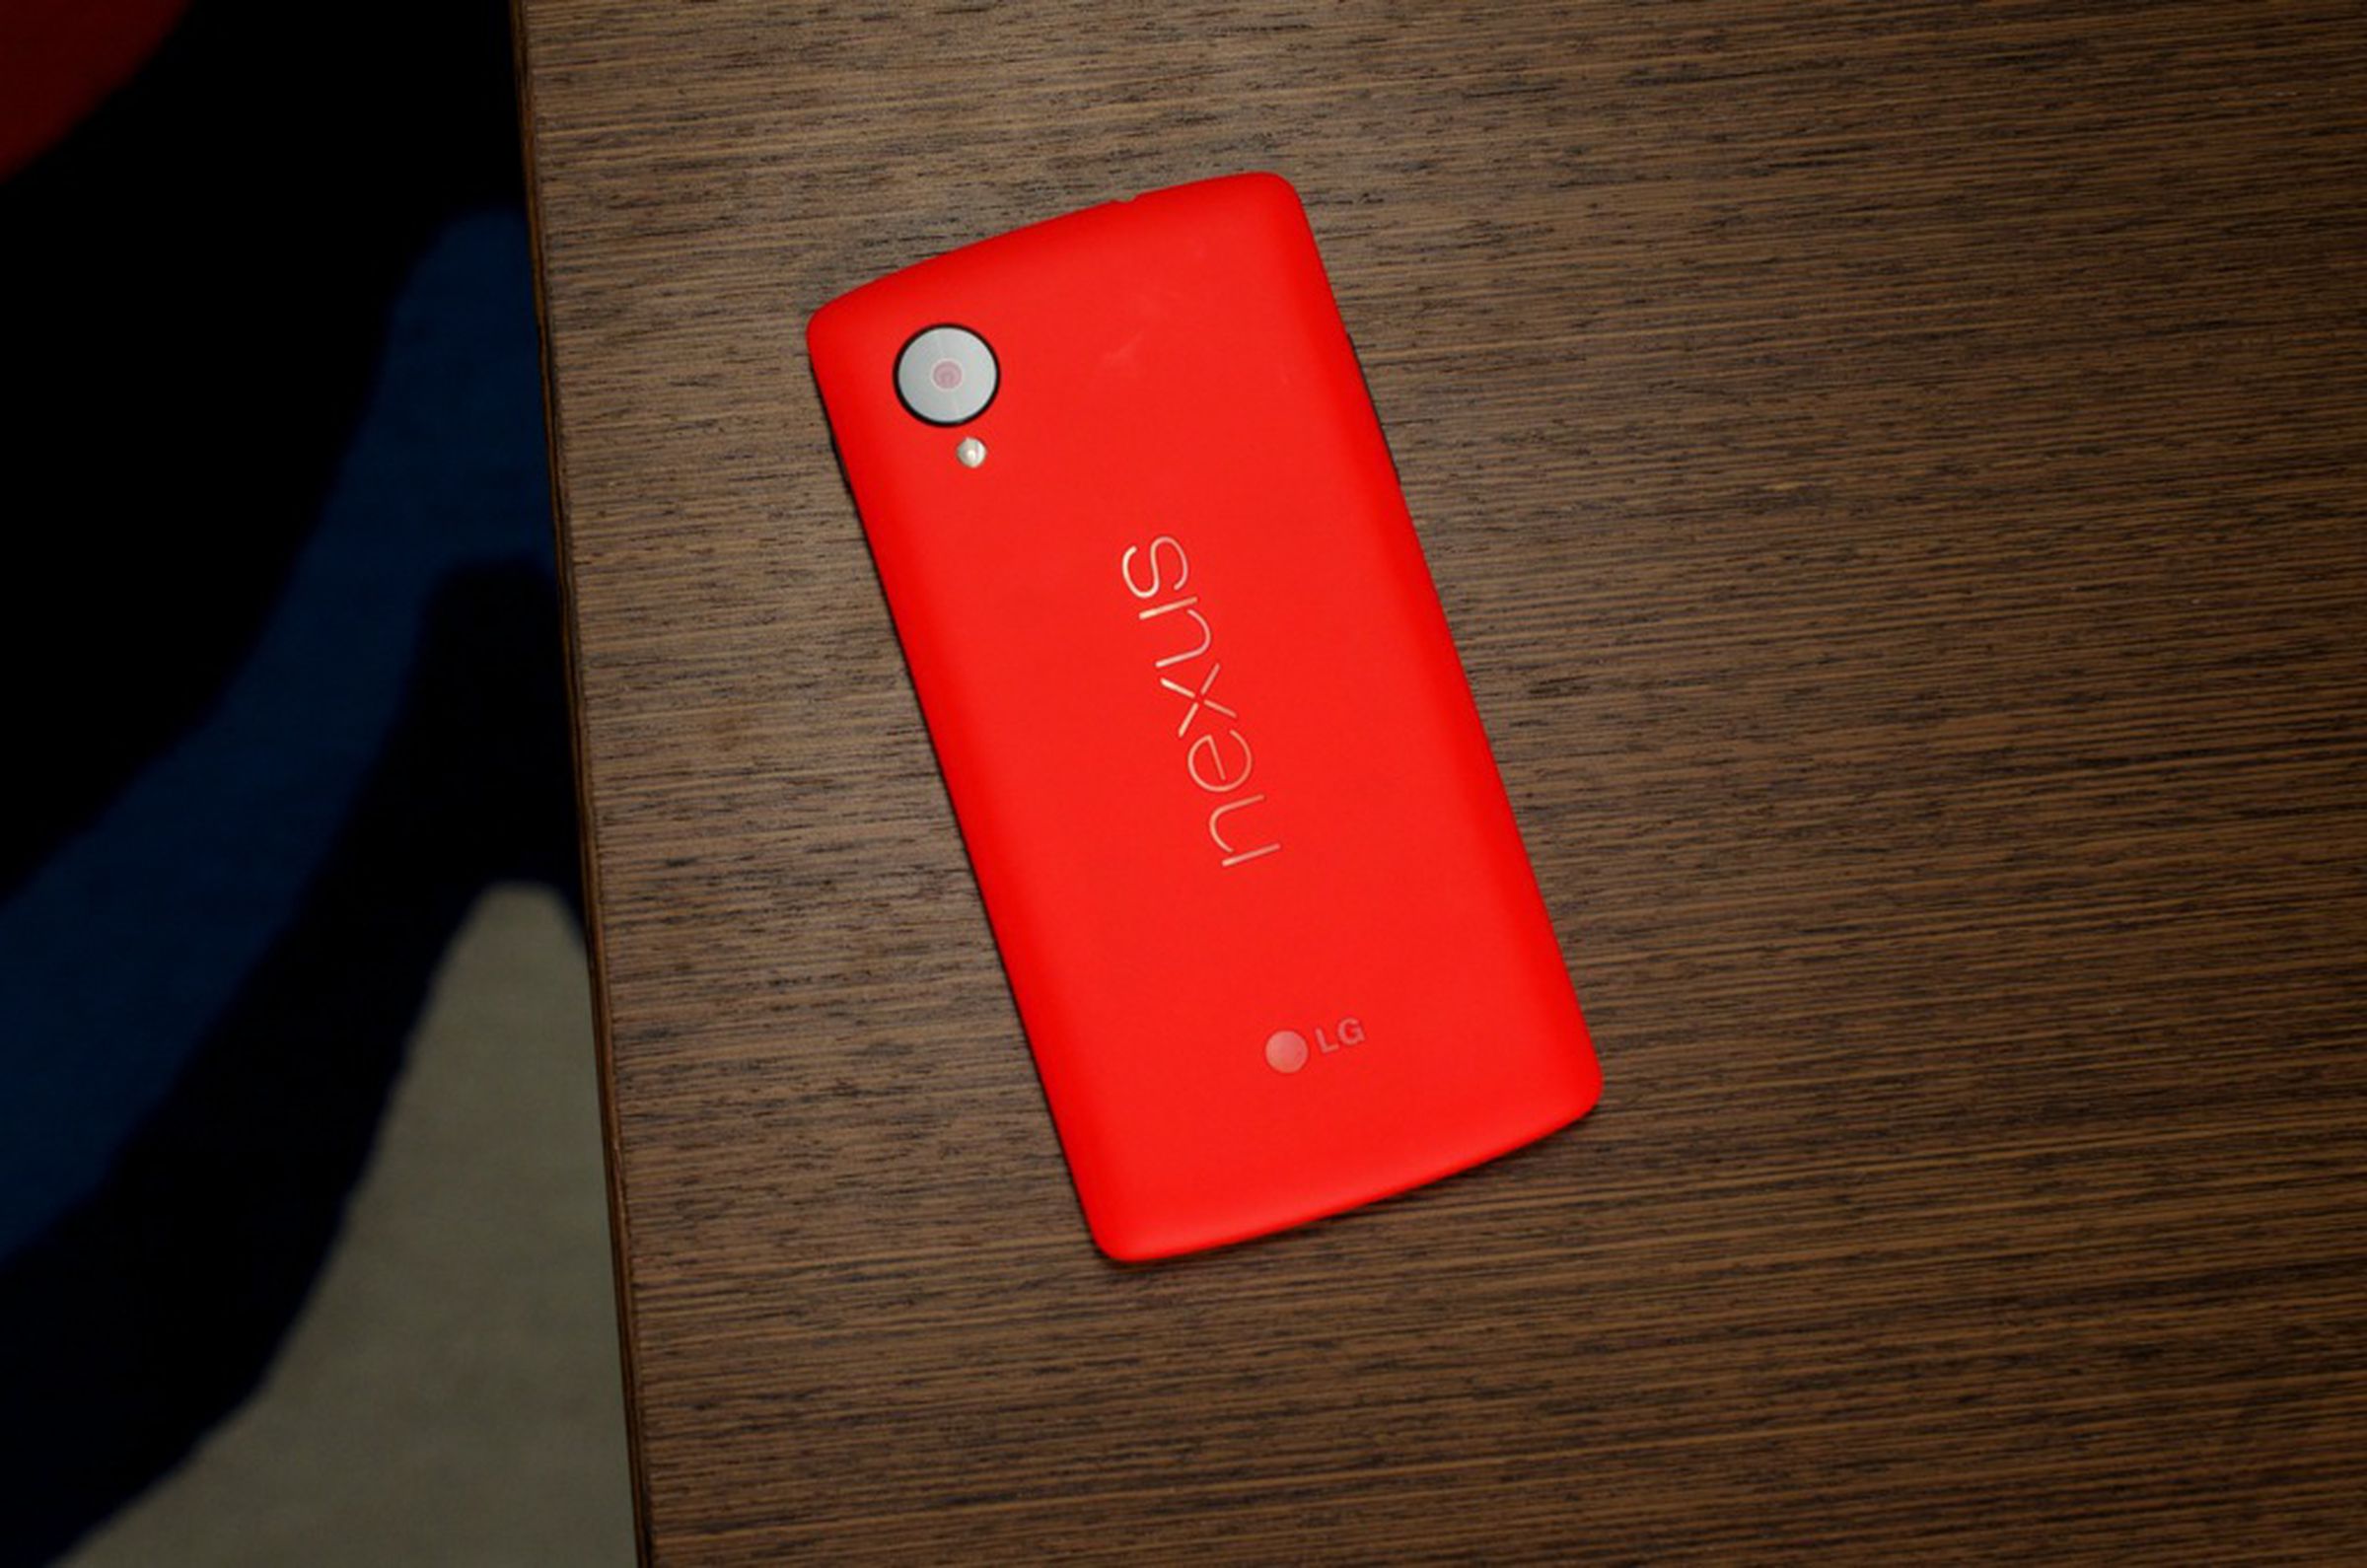 Nexus 5 red model hands-on pictures